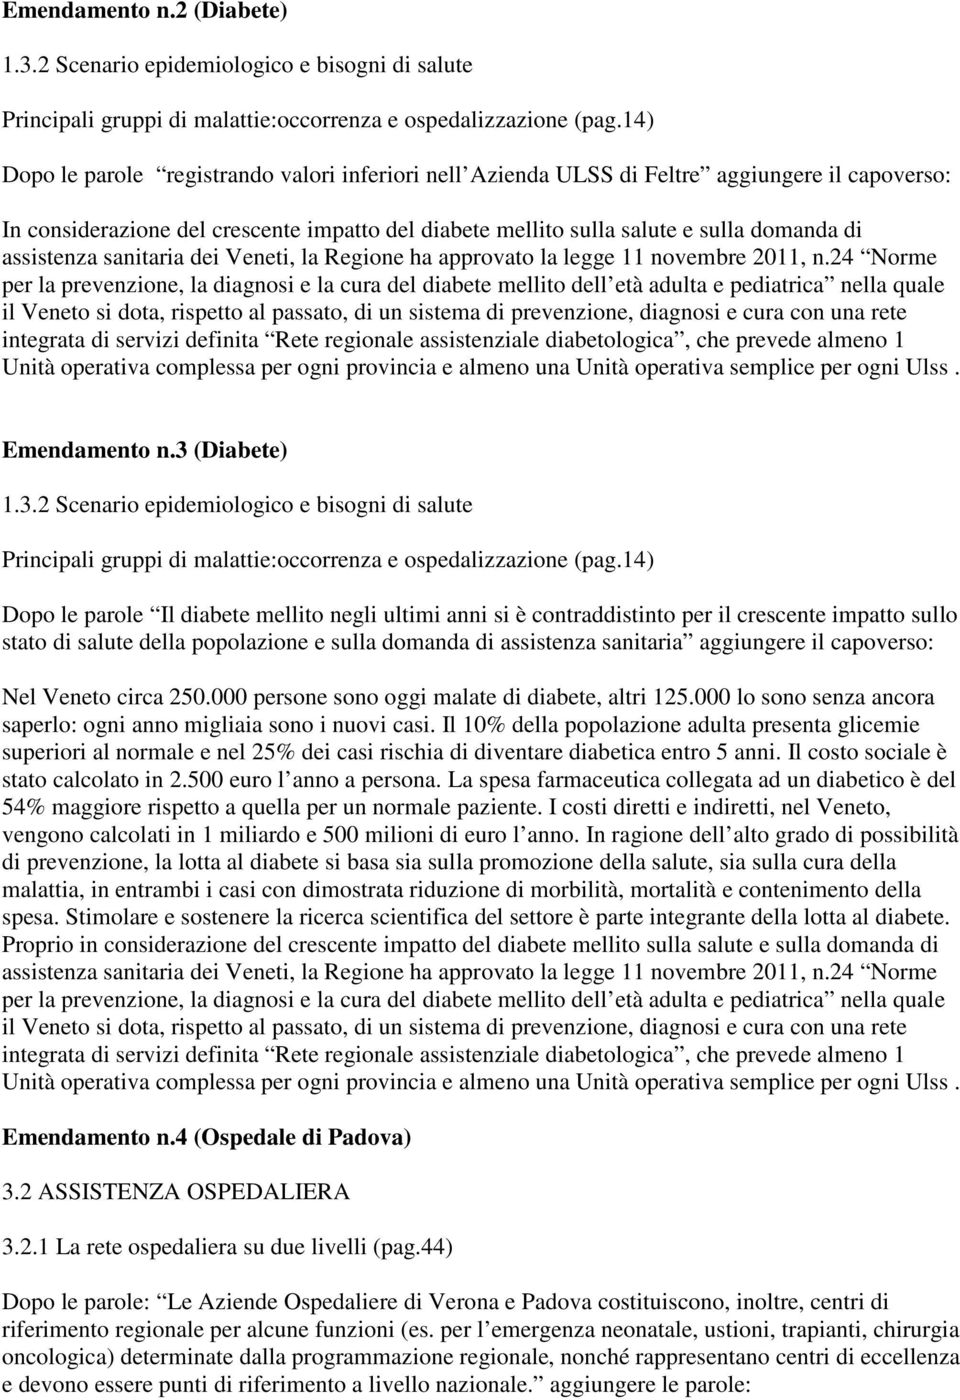 assistenza sanitaria dei Veneti, la Regione ha approvato la legge 11 novembre 2011, n.